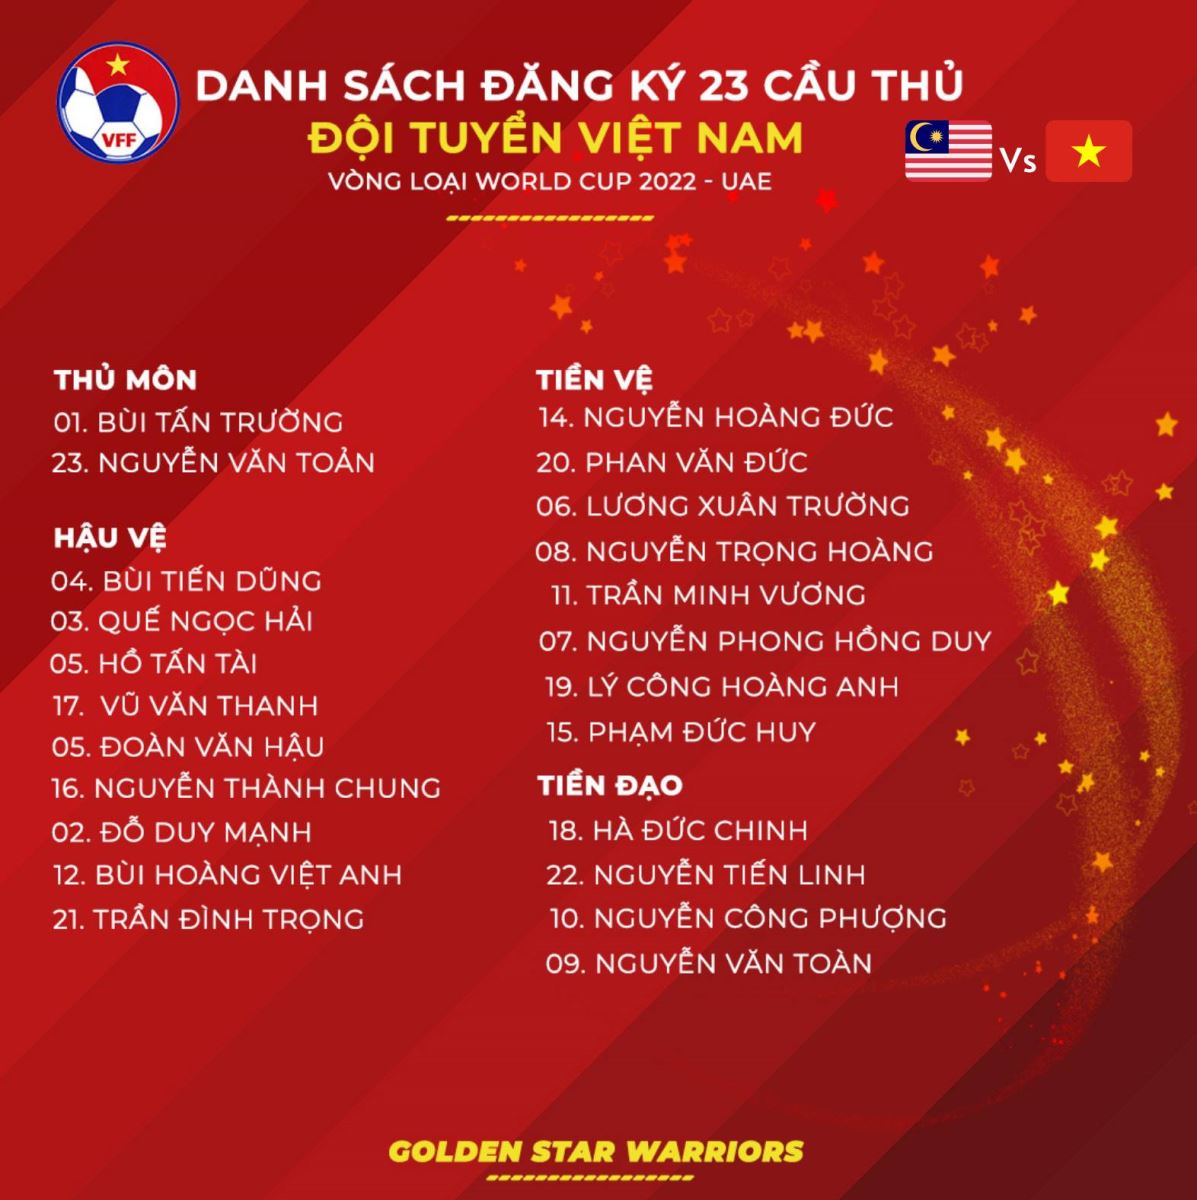 Trực tiếp bóng đá hôm nay: Việt Nam vs Malaysia, Indonesia vs UAE, Thổ Nhĩ Kỳ vs Ý. VTV6, VTV5 trực tiếp vòng loại World Cup 2022. Xem VTV3, VTV6 trực tiếp EURO 2021.